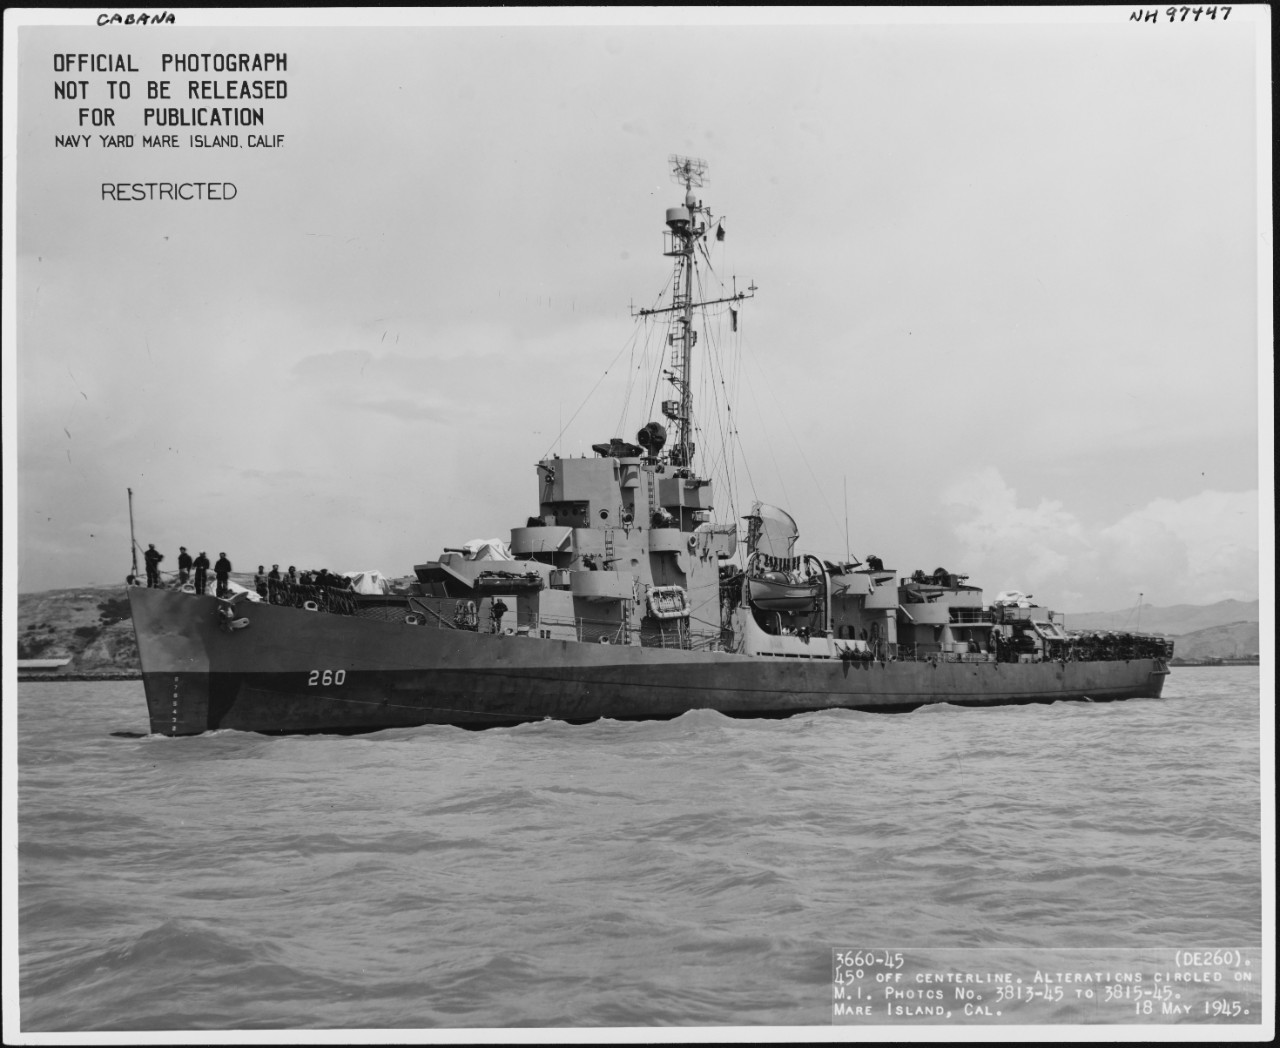 Photo #: NH 97447  USS Cabana (DE-260)